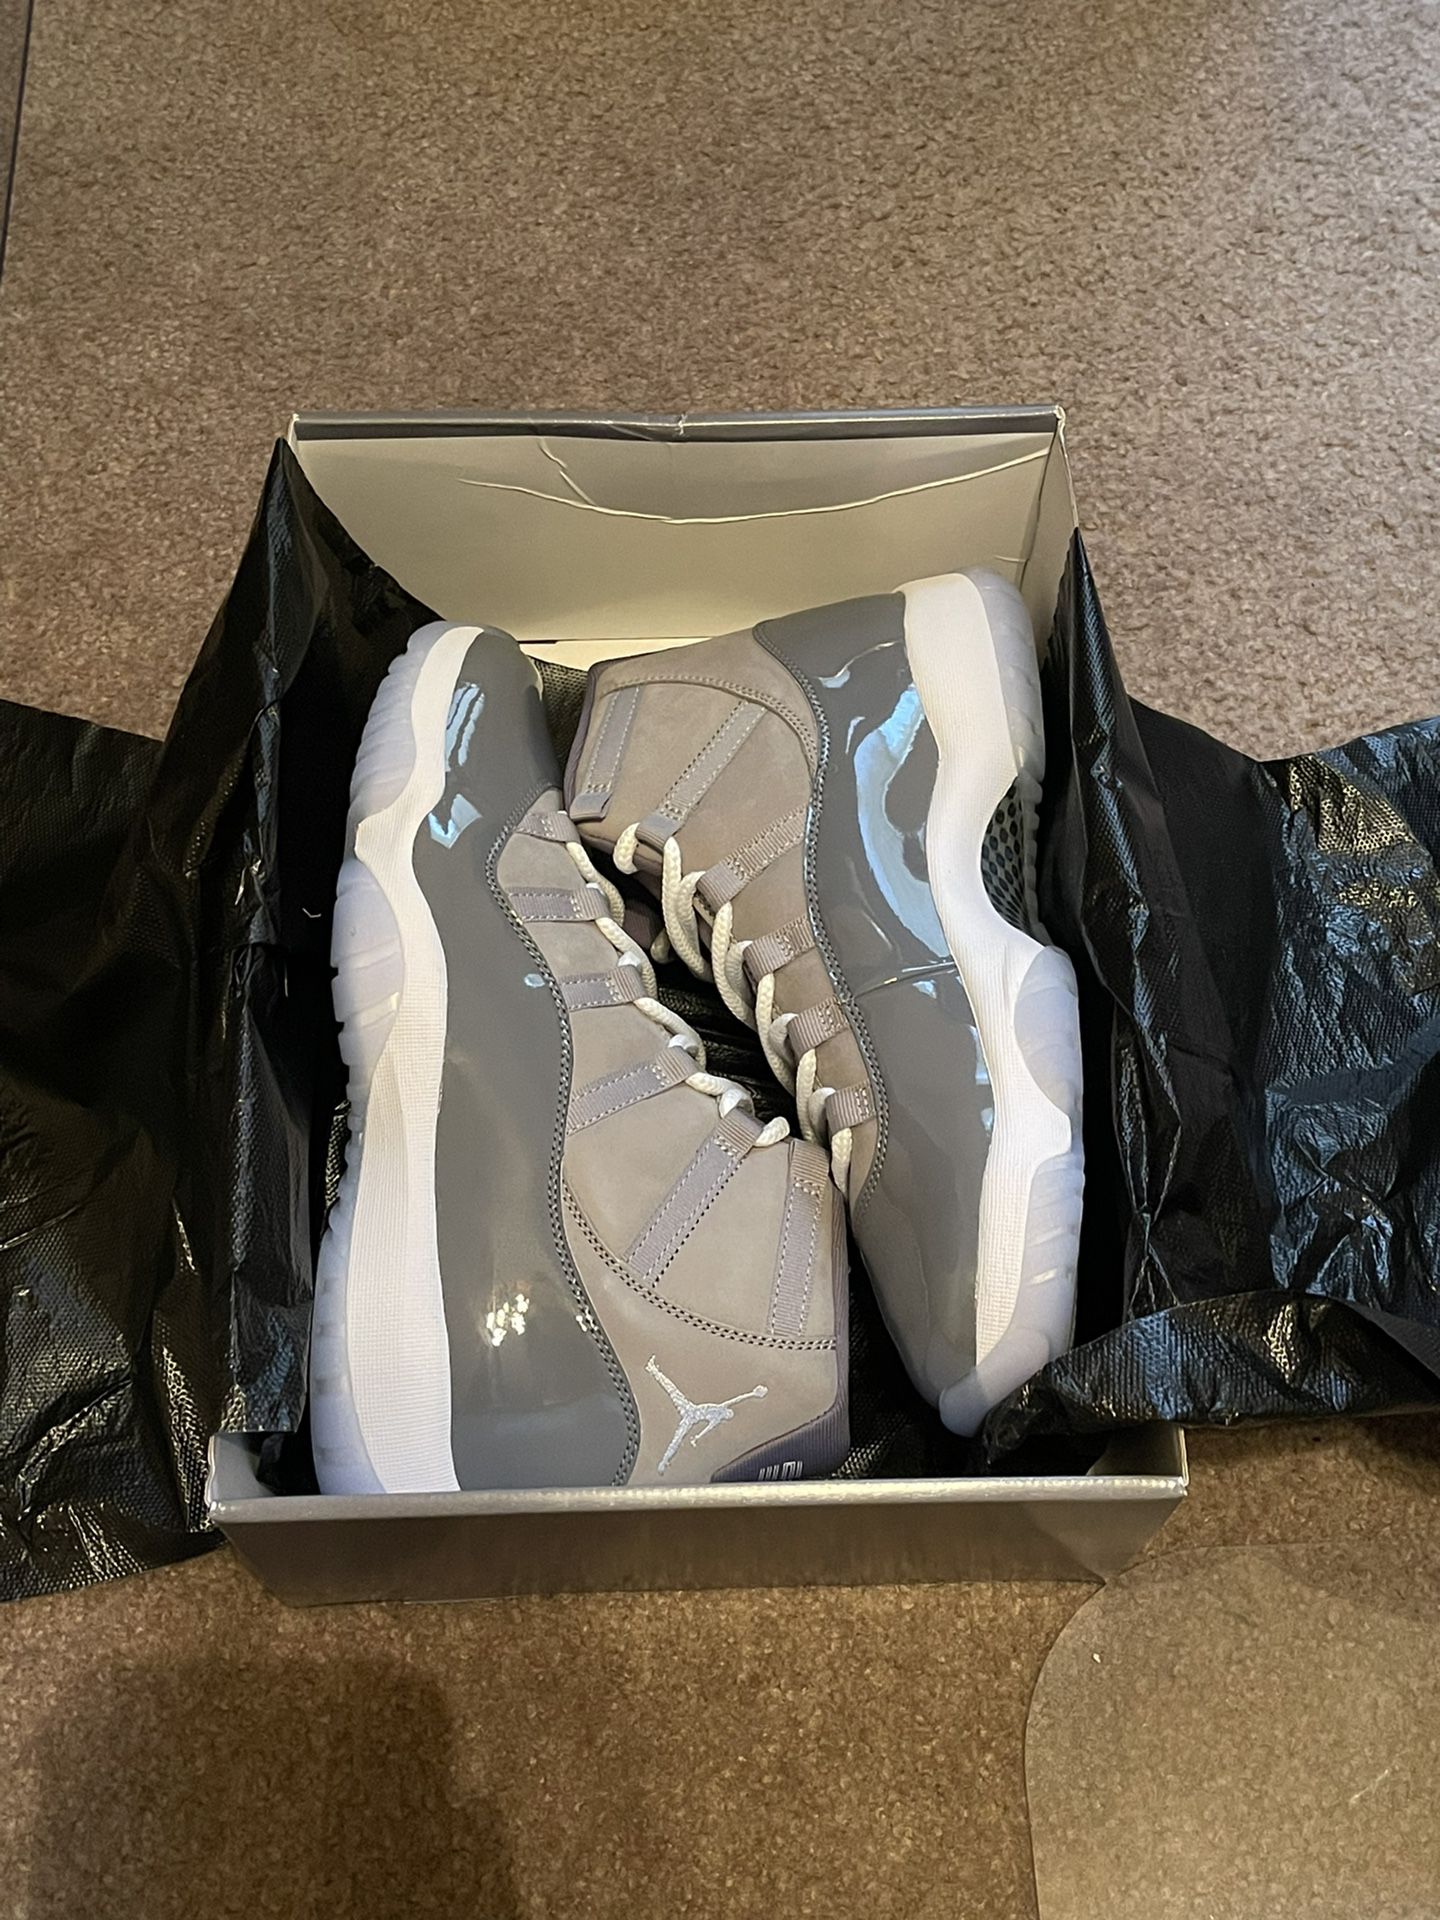 DS Nike Air Jordan Retro 11 “Cool Grey” - Mens Size 11 Sneaker